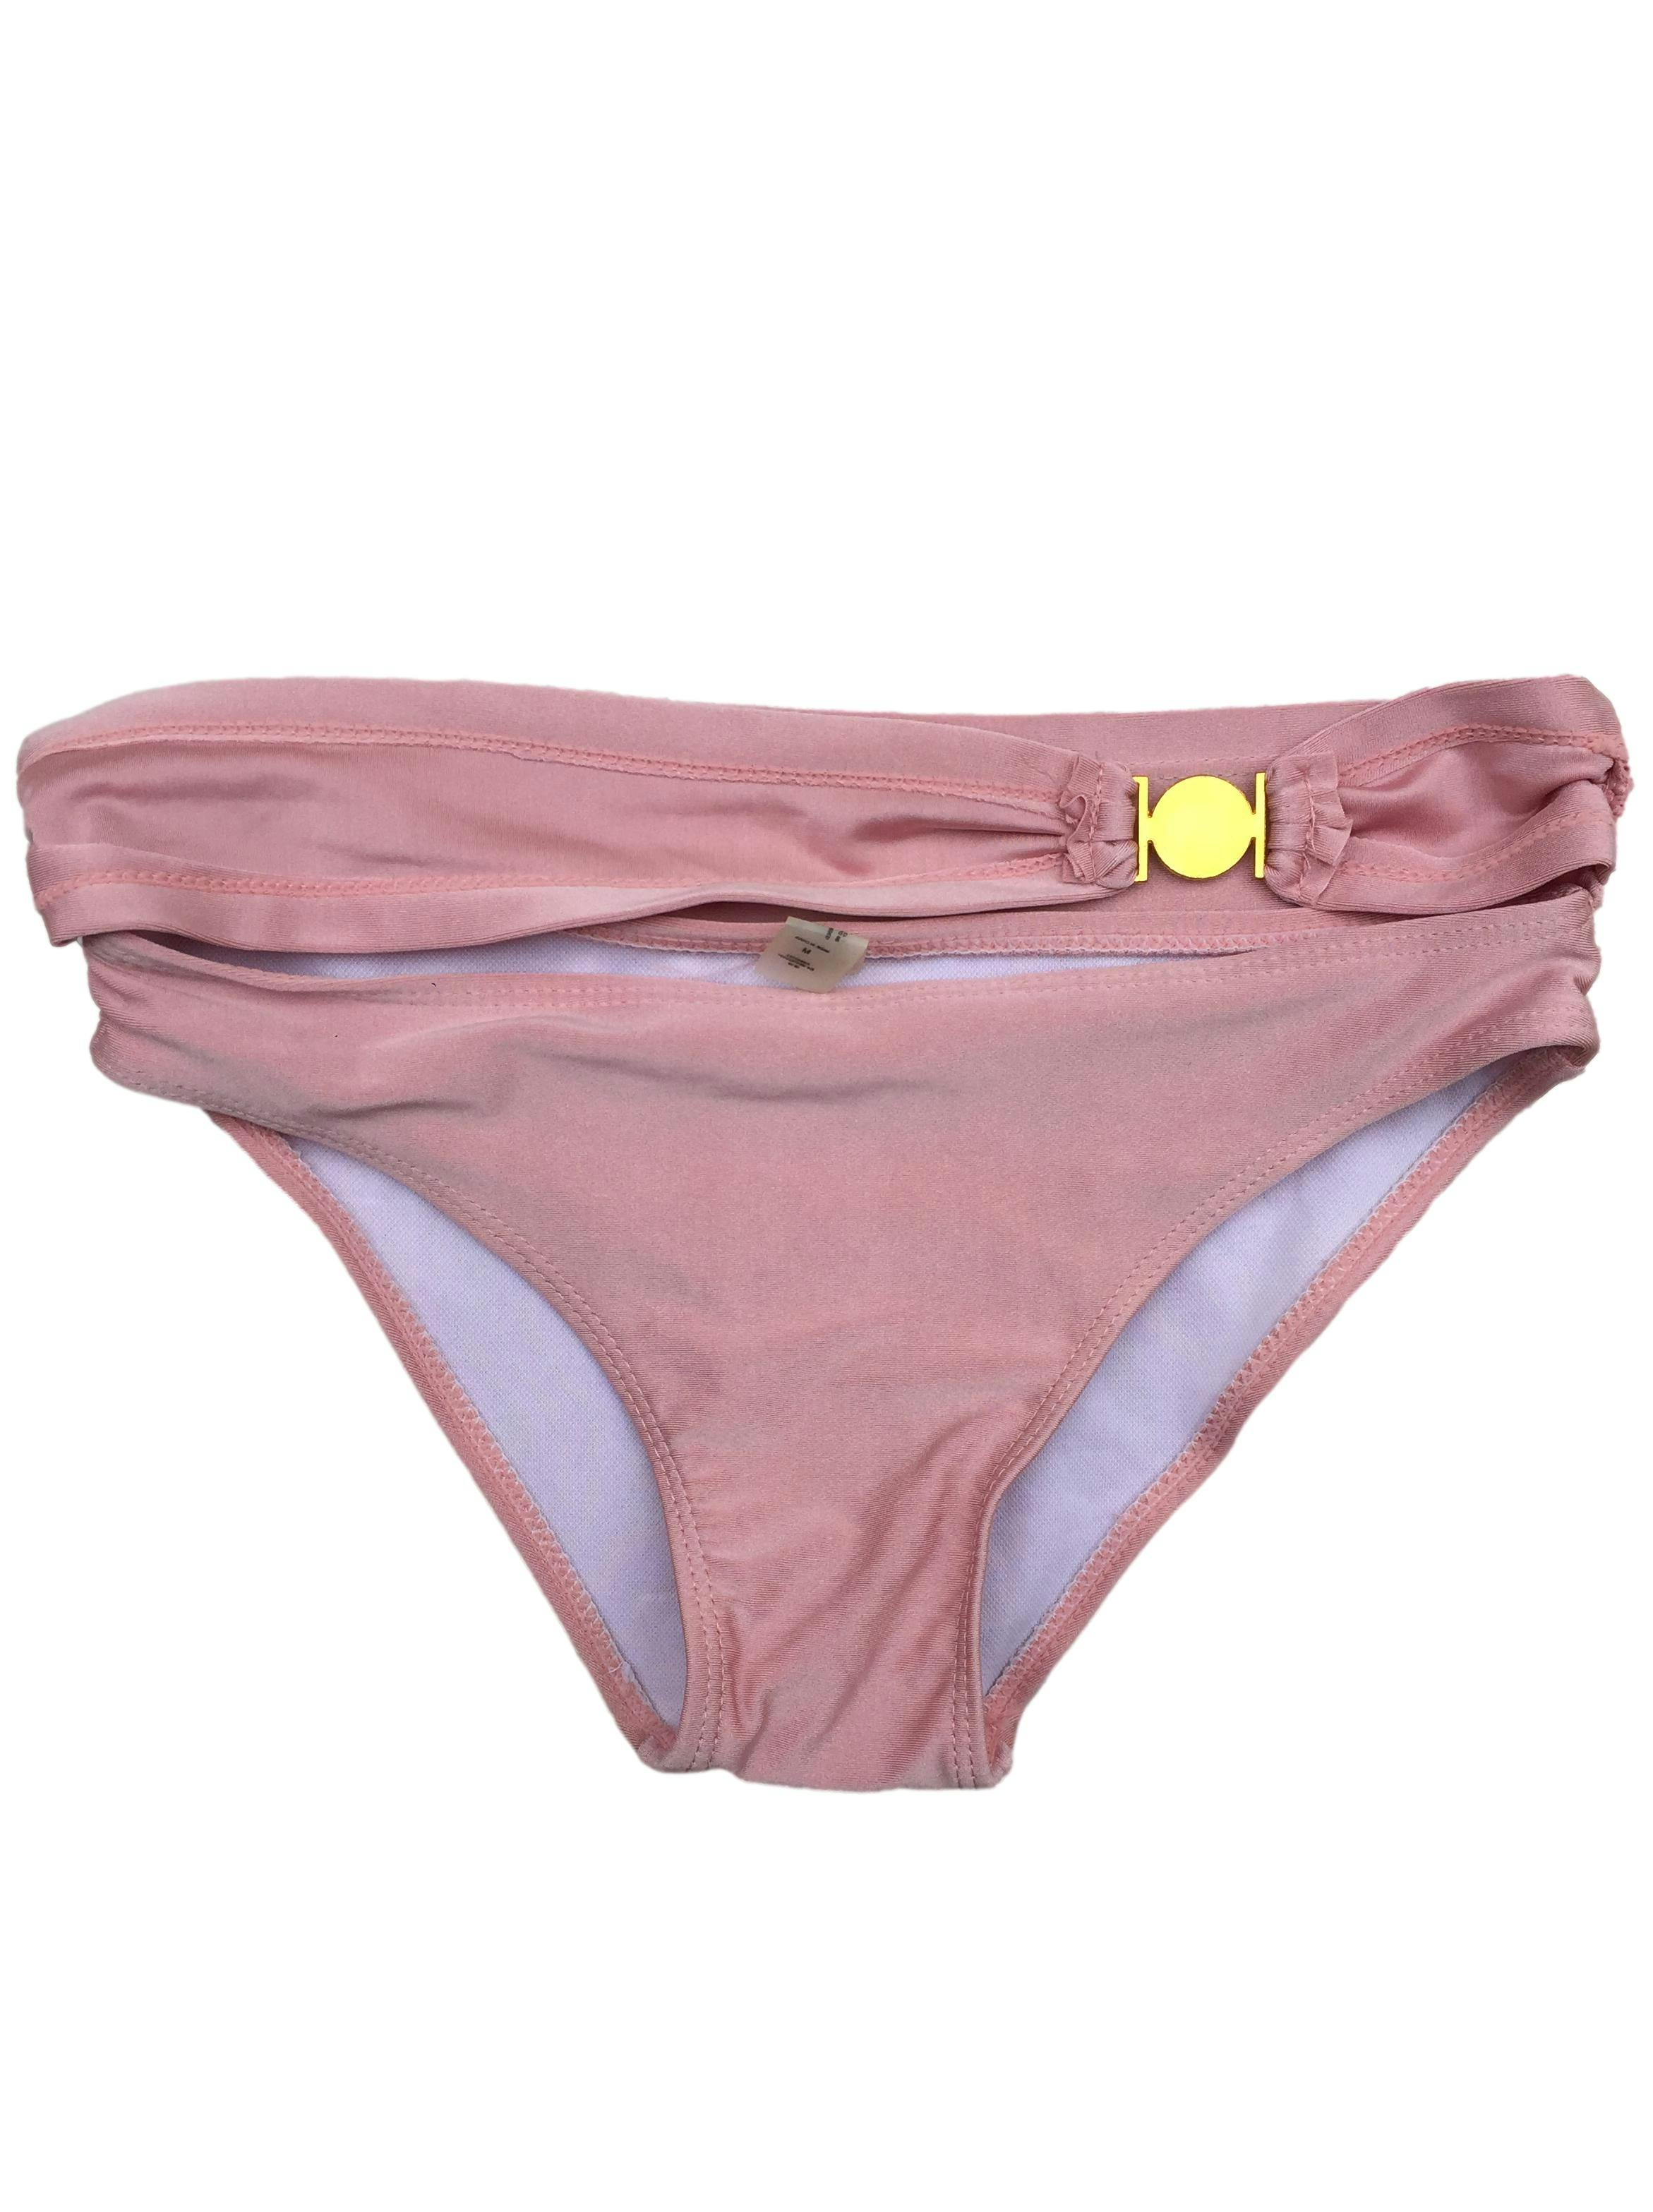 Truza ropa de baño rosa perlado. Cintura: 66cm. Nuevo sin etiqueta